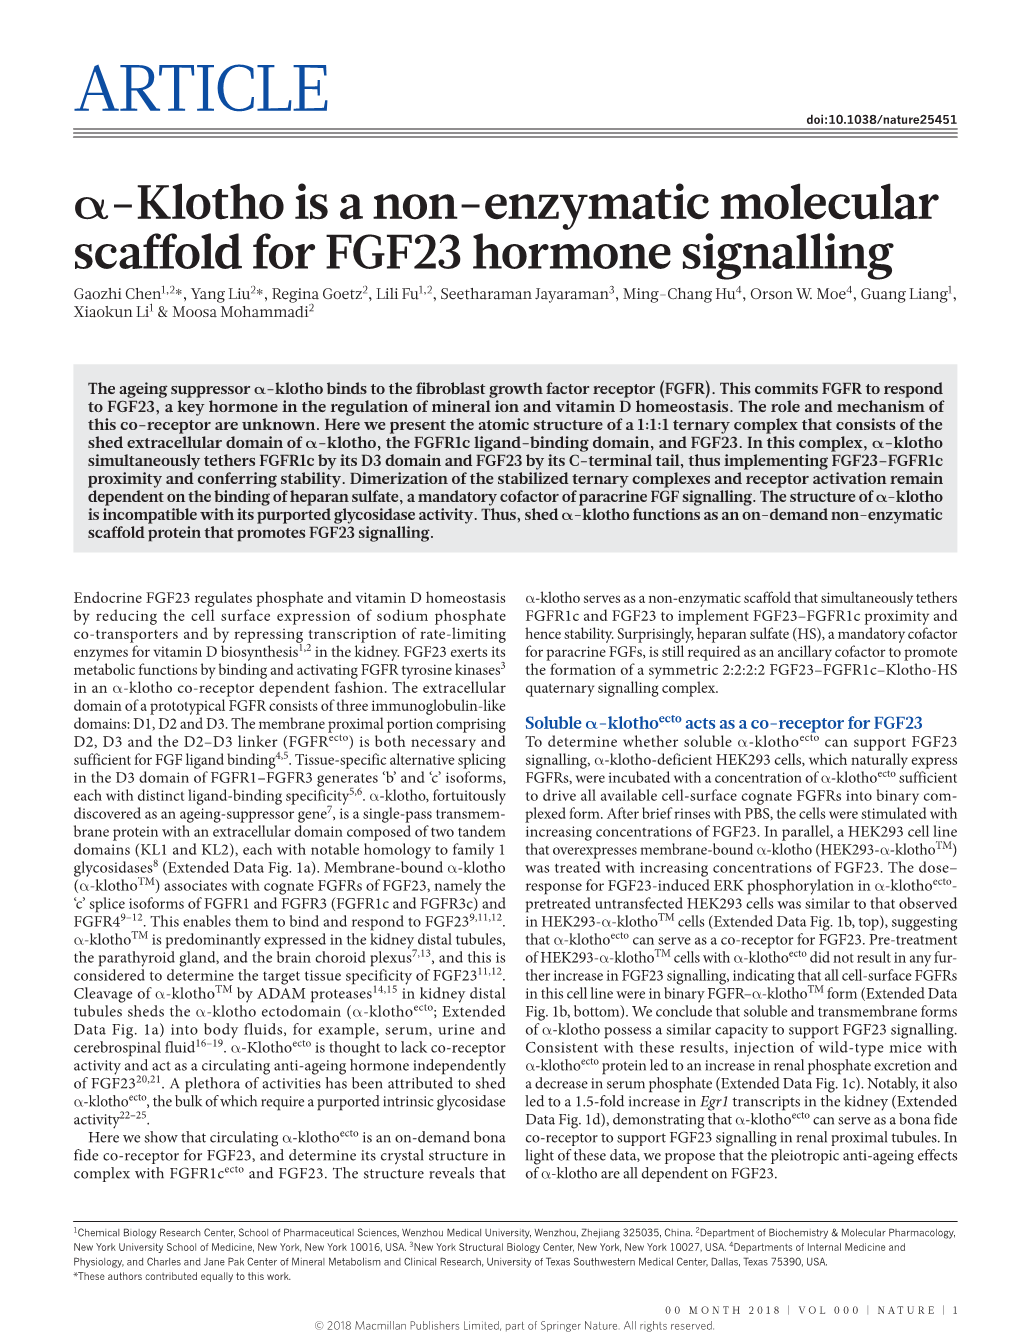 Α-Klotho Is a Non-Enzymatic Molecular Scaffold for FGF23 Hormone